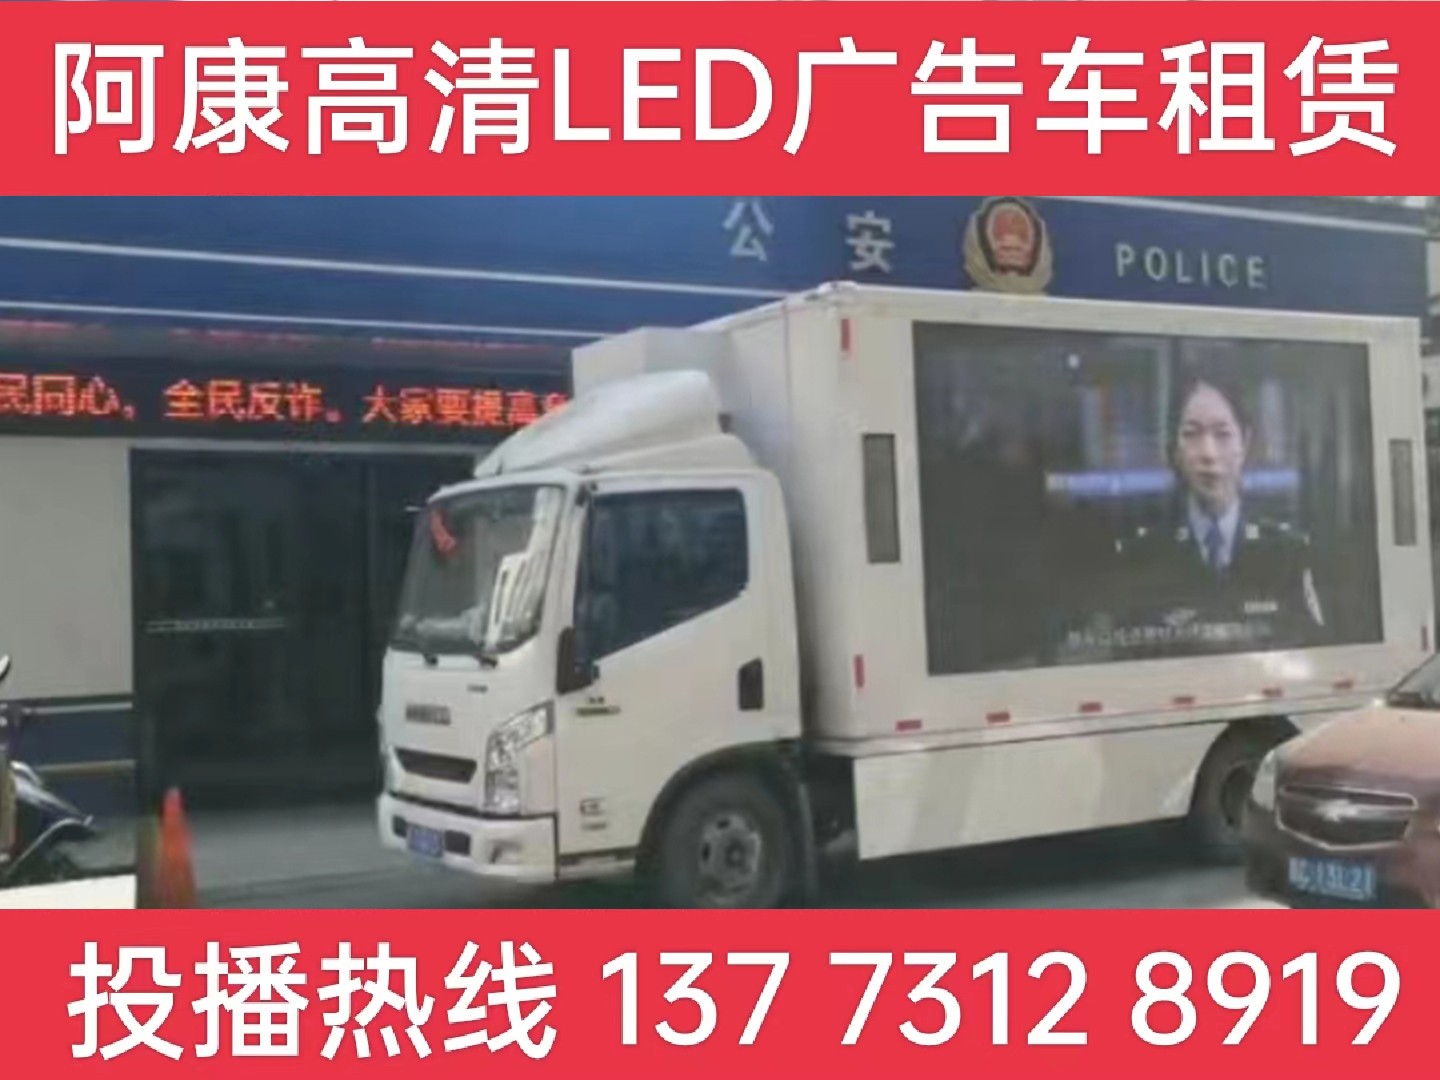 仪征LED广告车租赁-反诈宣传